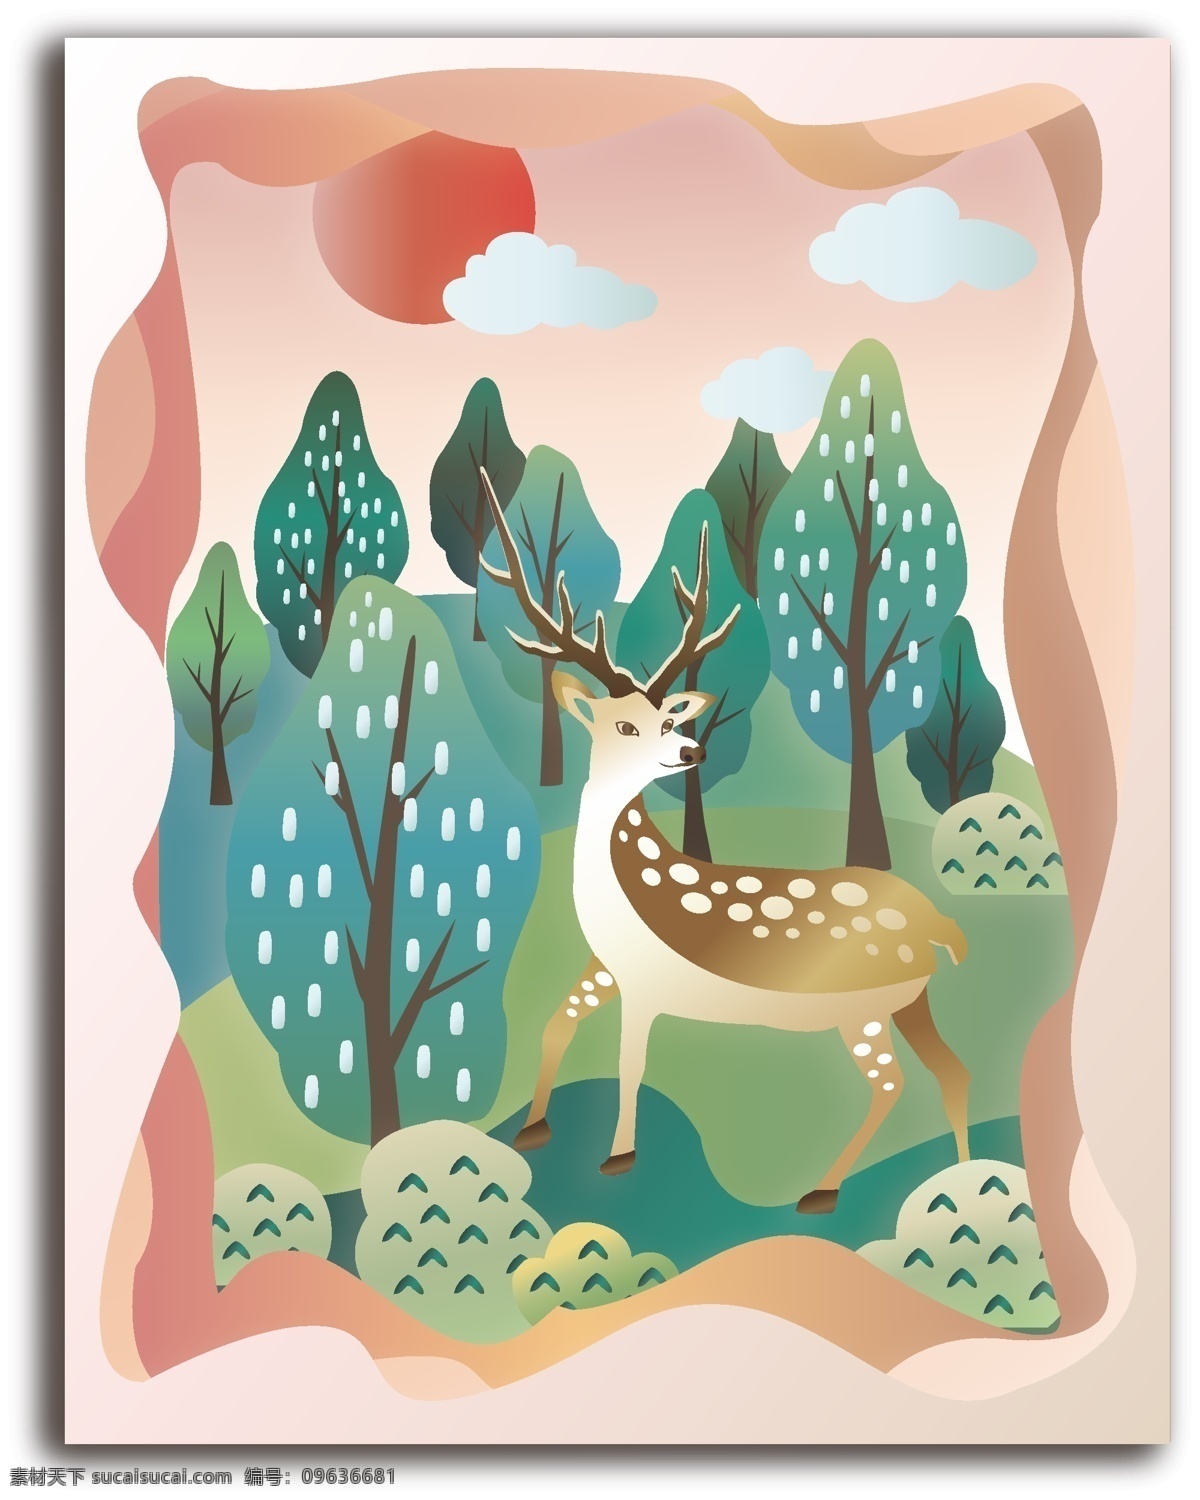 森林 鹿 剪纸 风 温暖 治愈 插画 装饰画 动物 立体 树林 小清新 森林与鹿 剪纸风 动物立体